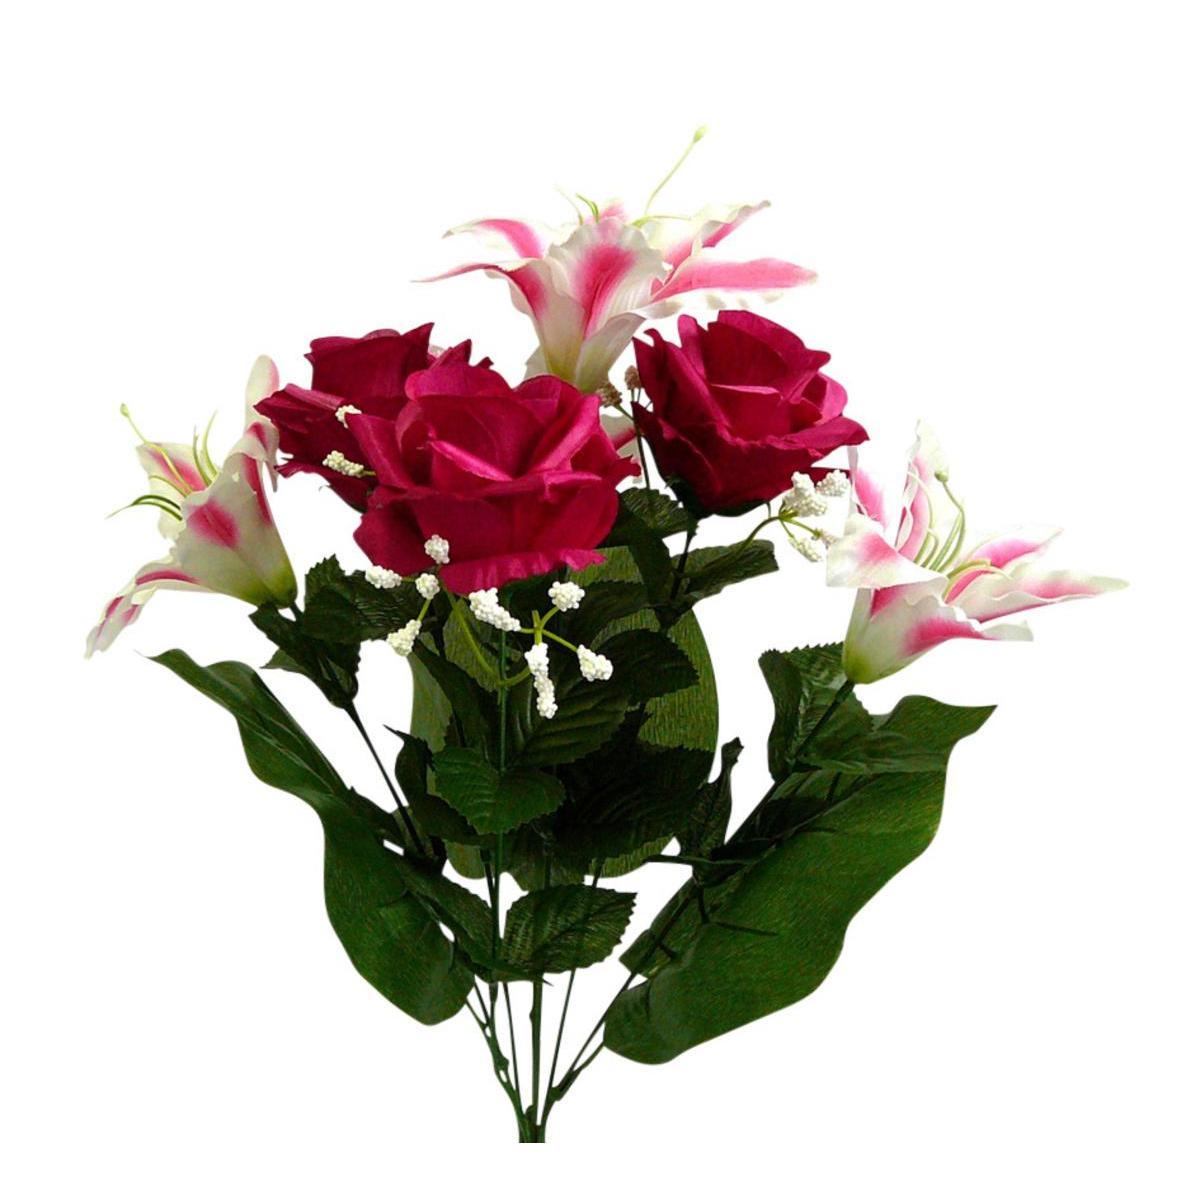 Bouquet de roses et de lys - 4 assortiments